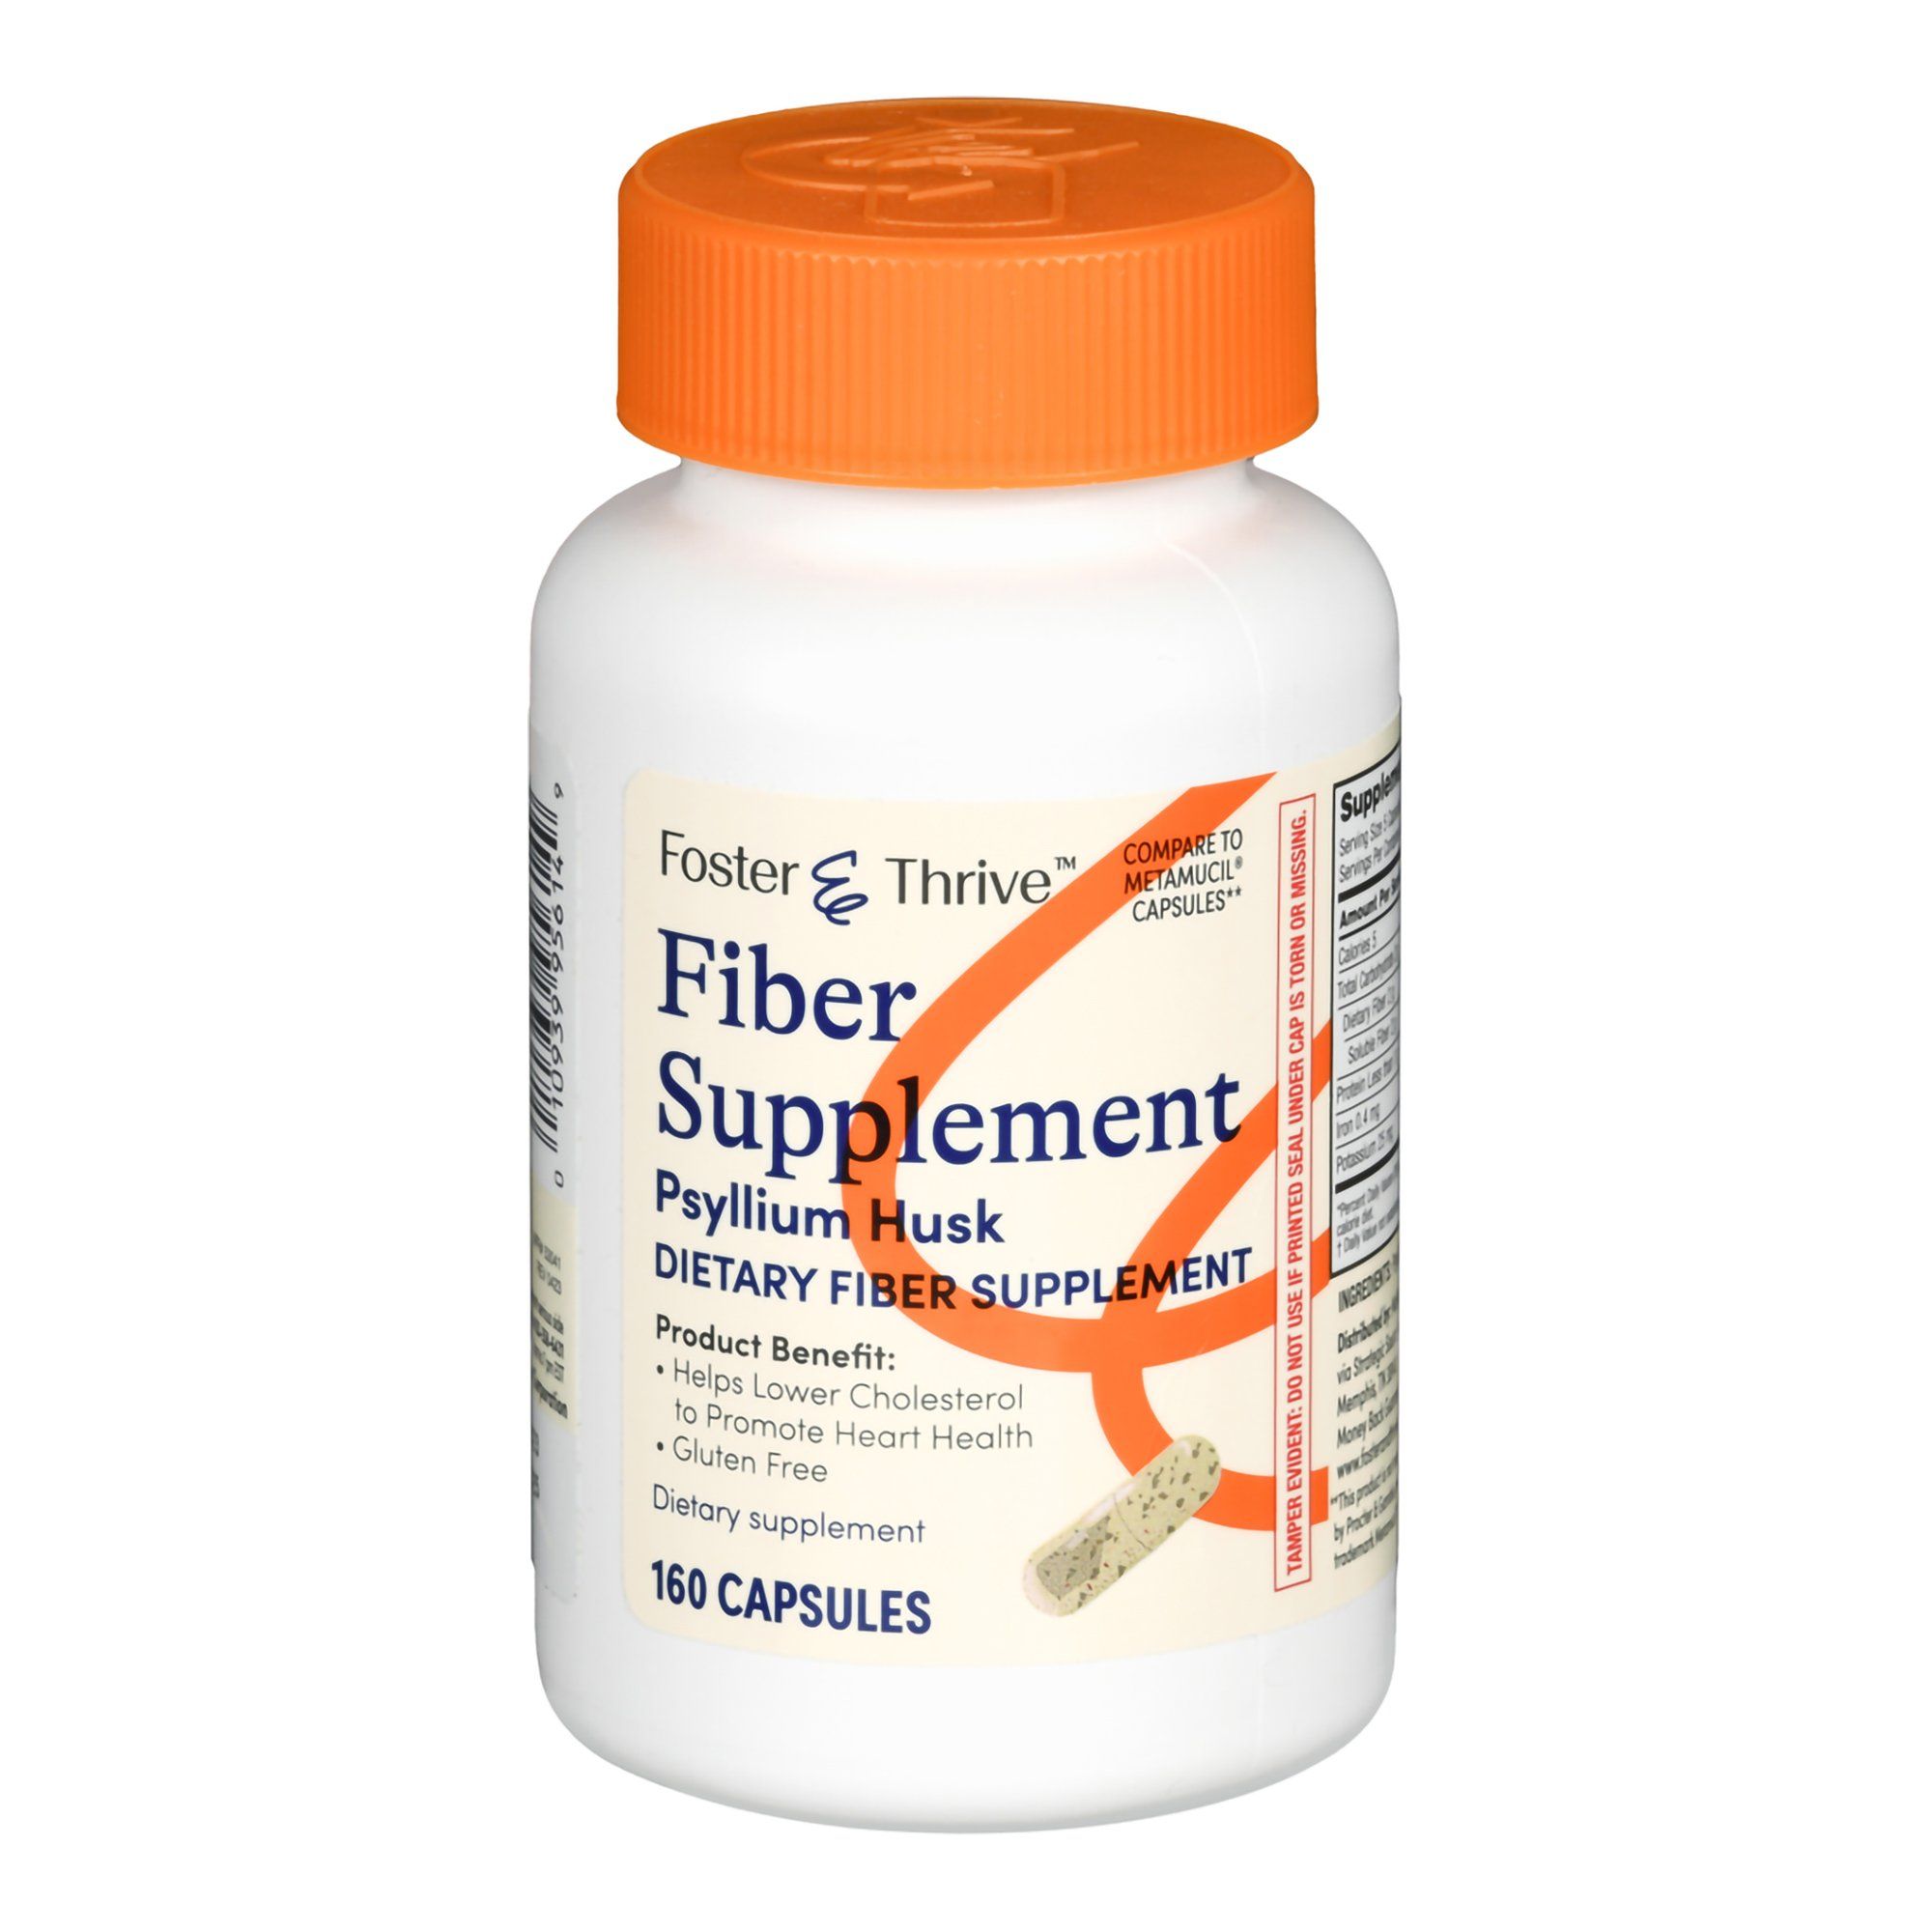 Foster & Thrive Fiber Supplement Psyllium Husk Capsules - 160 ct